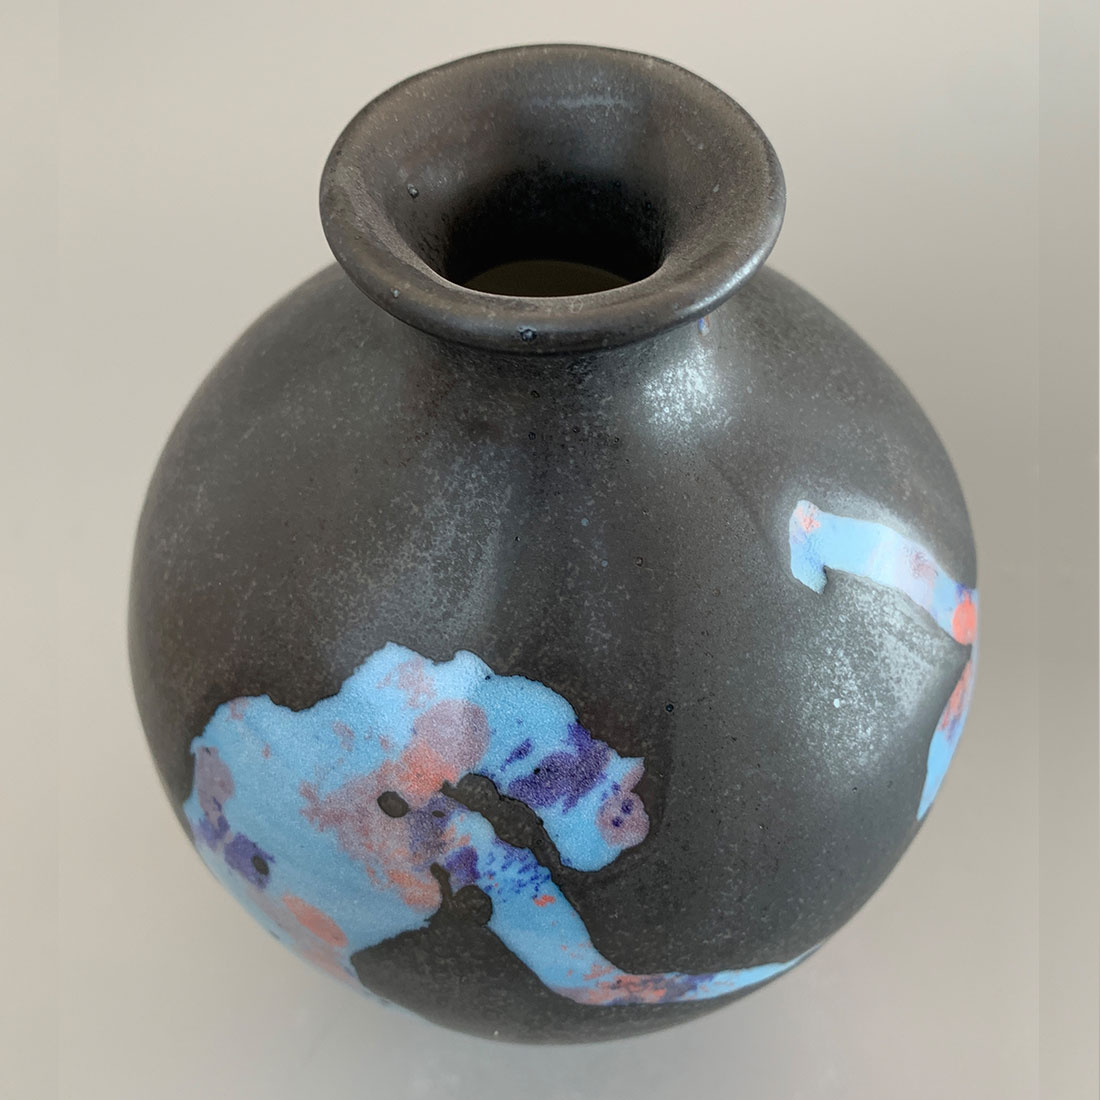 Figurative Vase in Blue